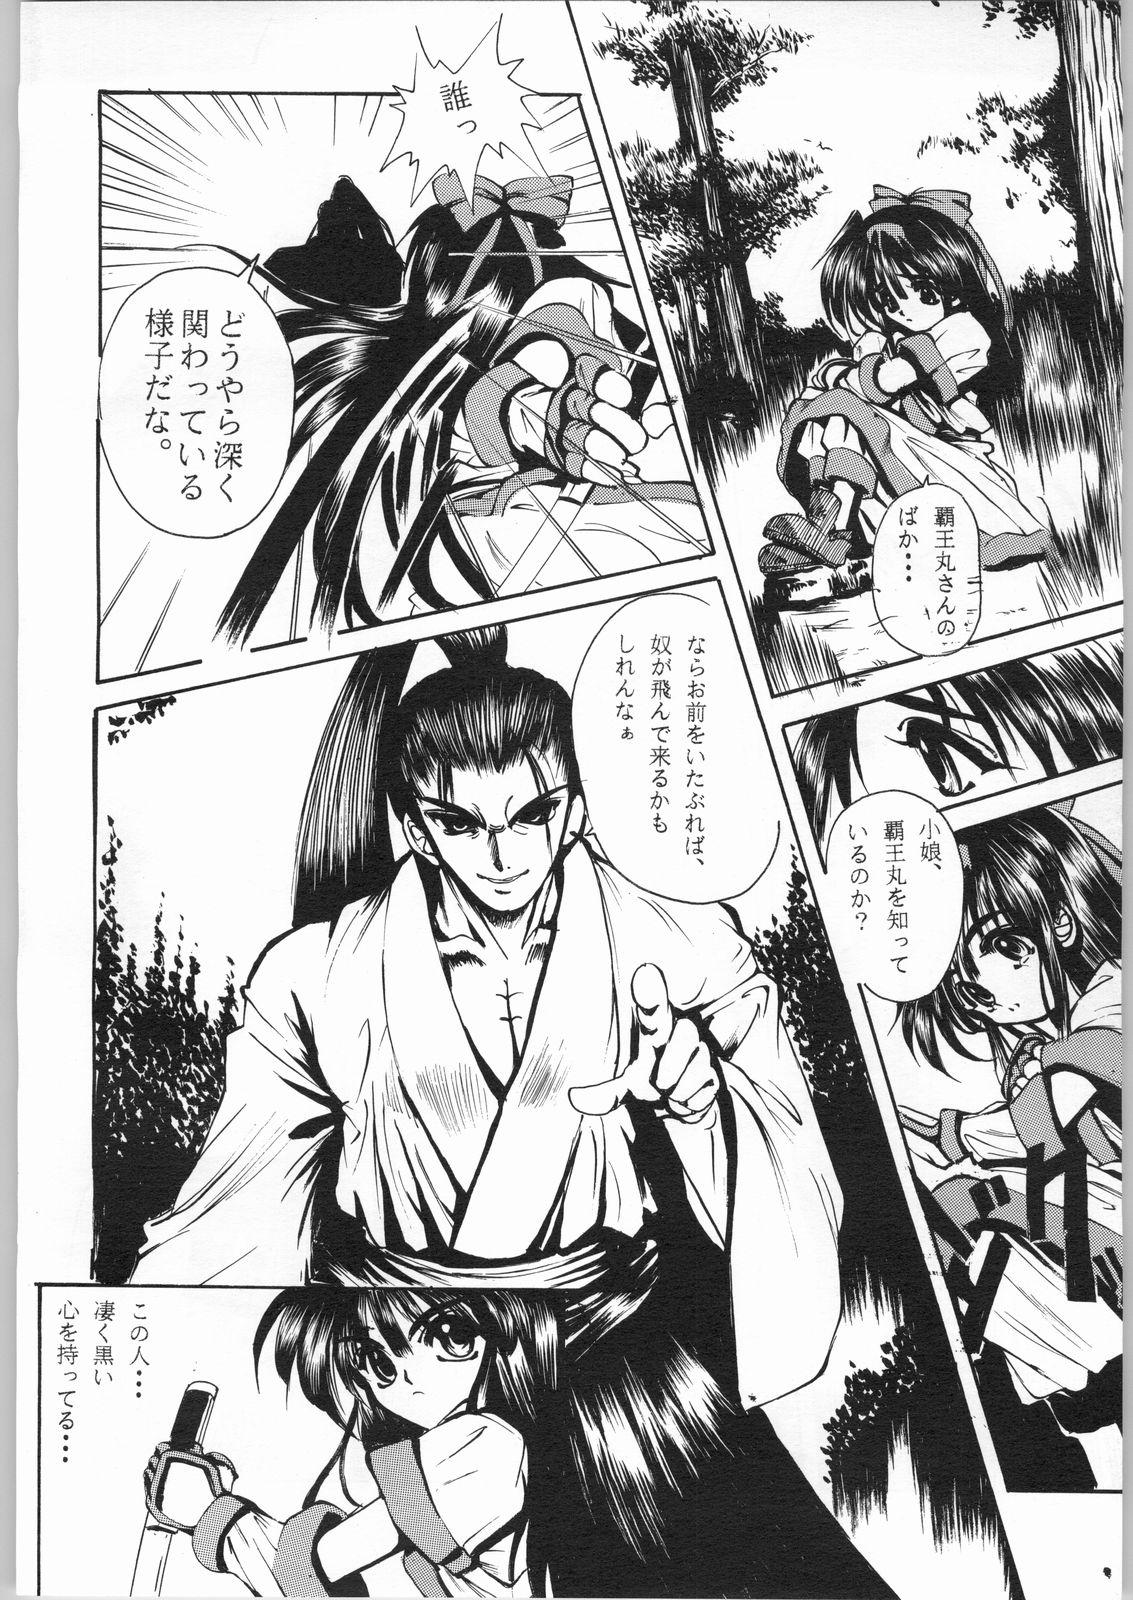 Kashima R-Works 1st Book - Samurai spirits Anal Licking - Page 11